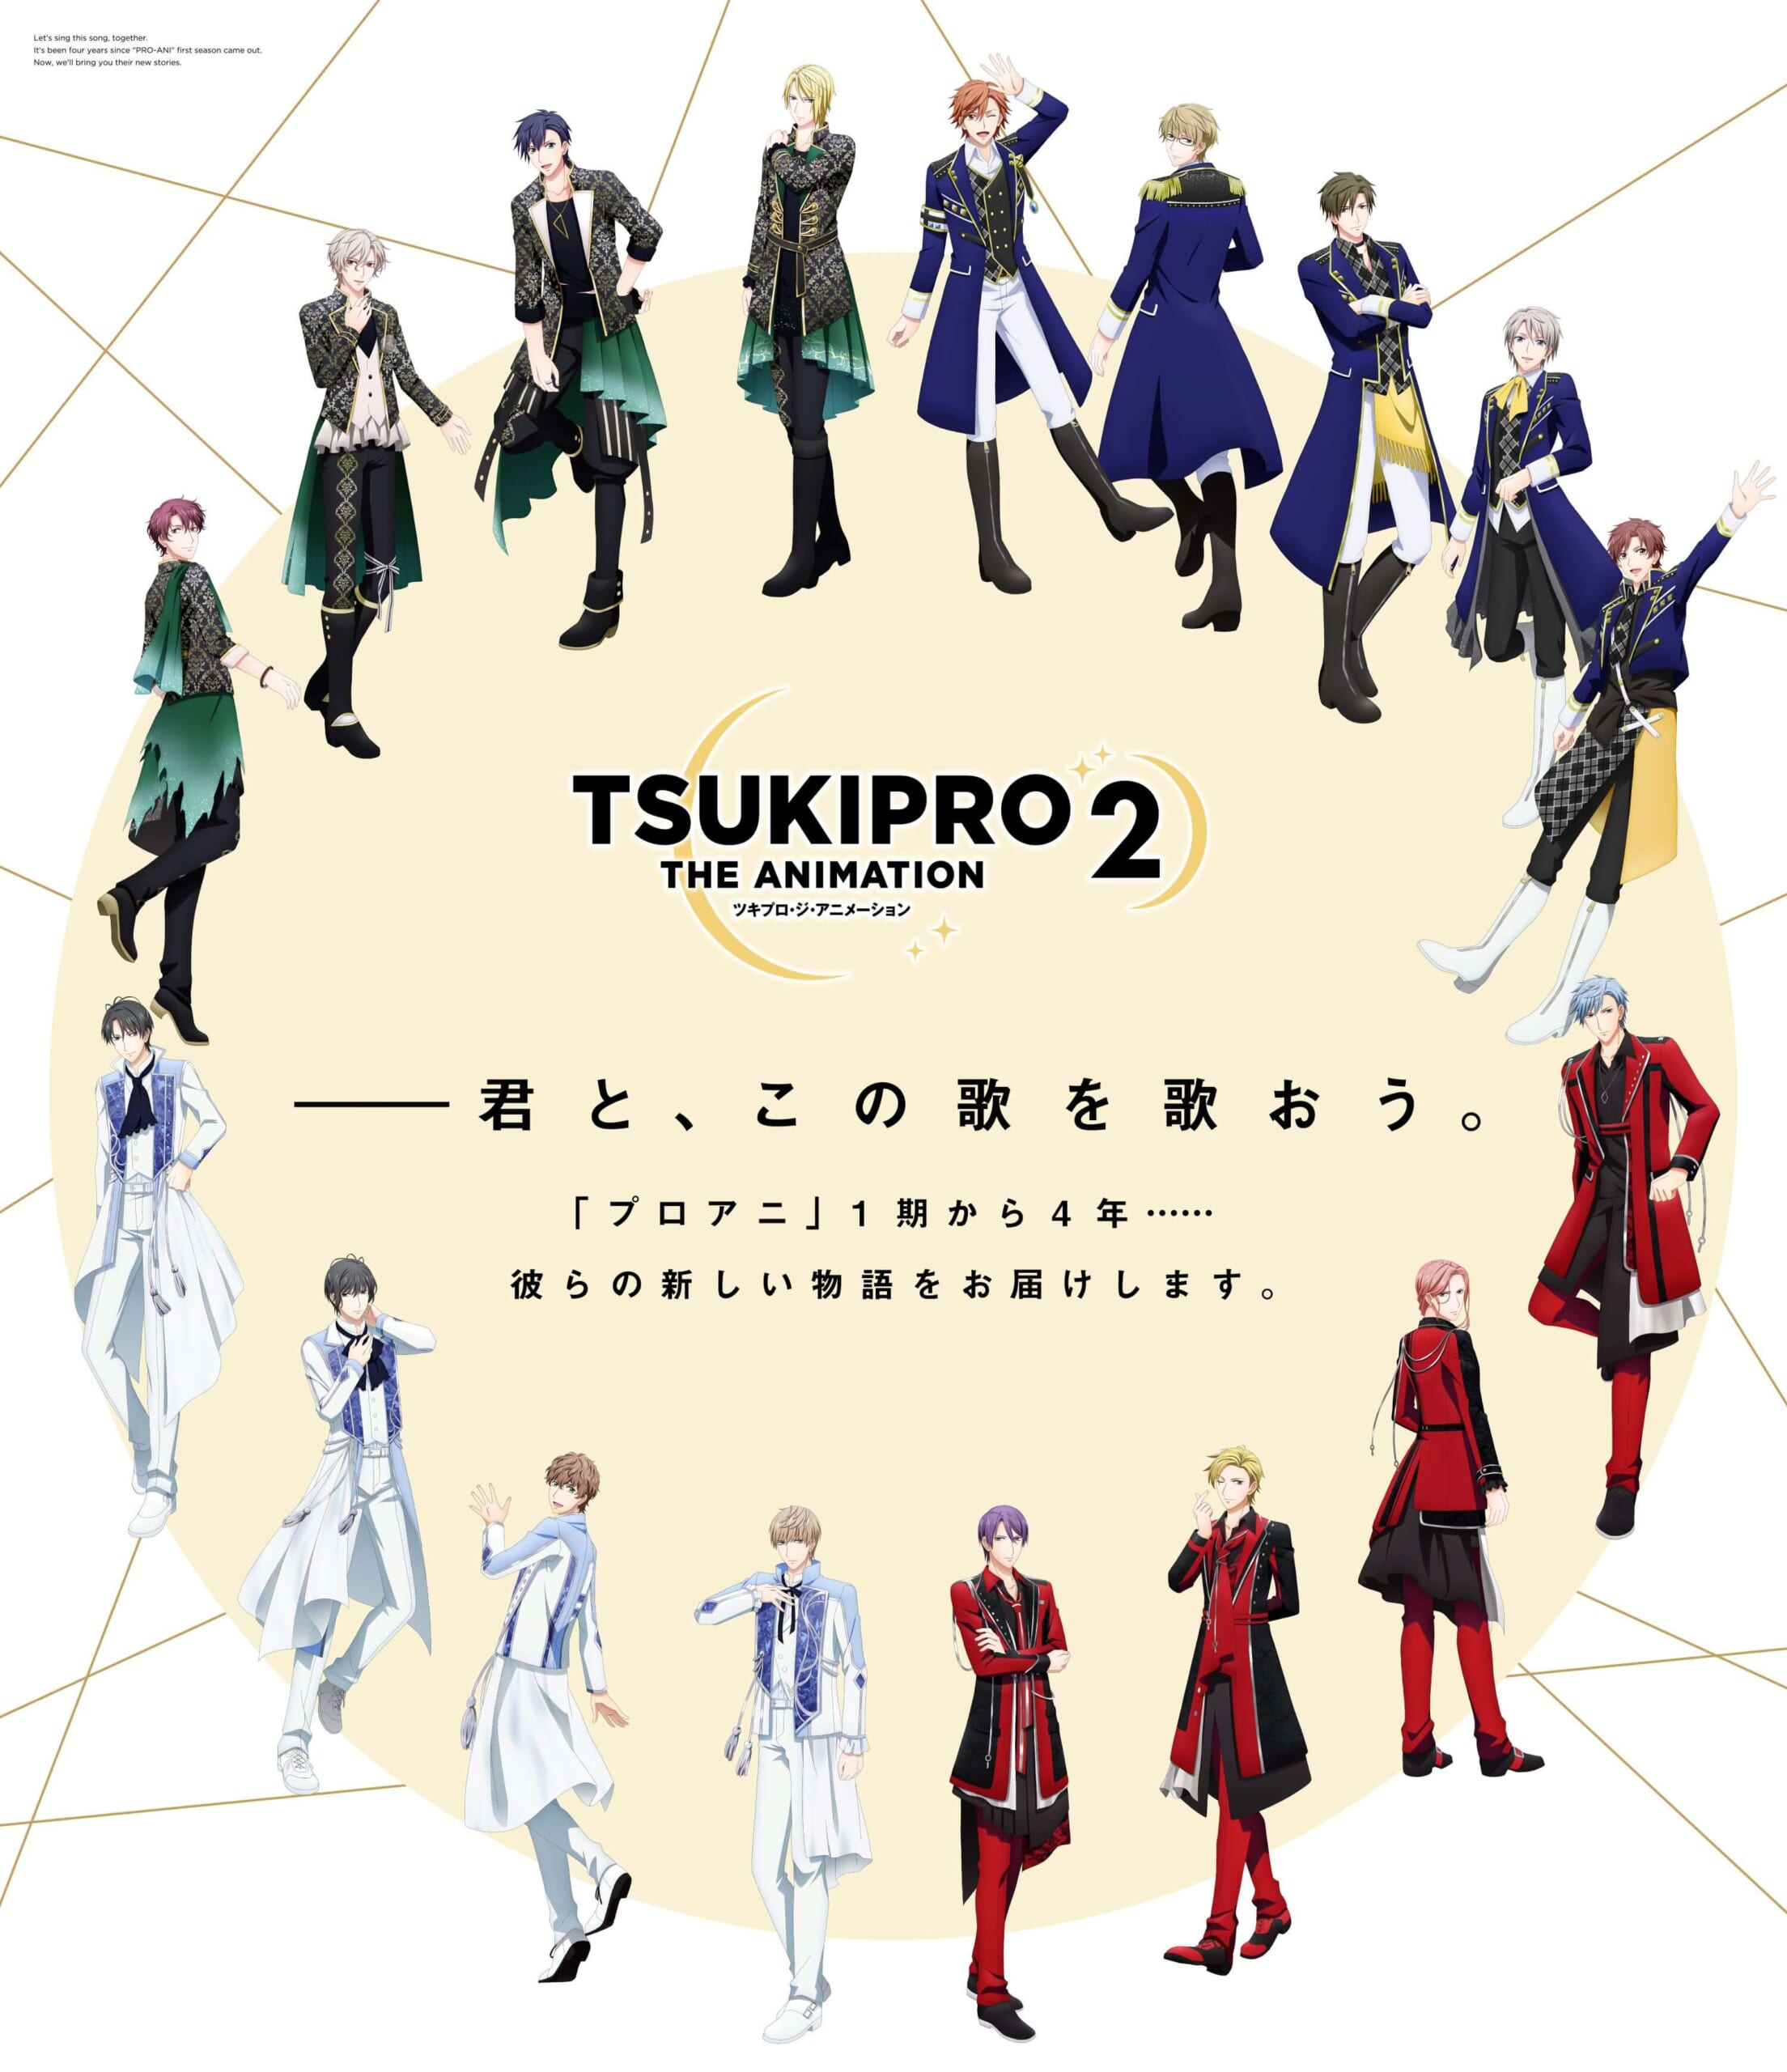 TVアニメ『TSUKIPRO THE ANIMATION 2』 BD&DVD 第1巻特典ポストカード